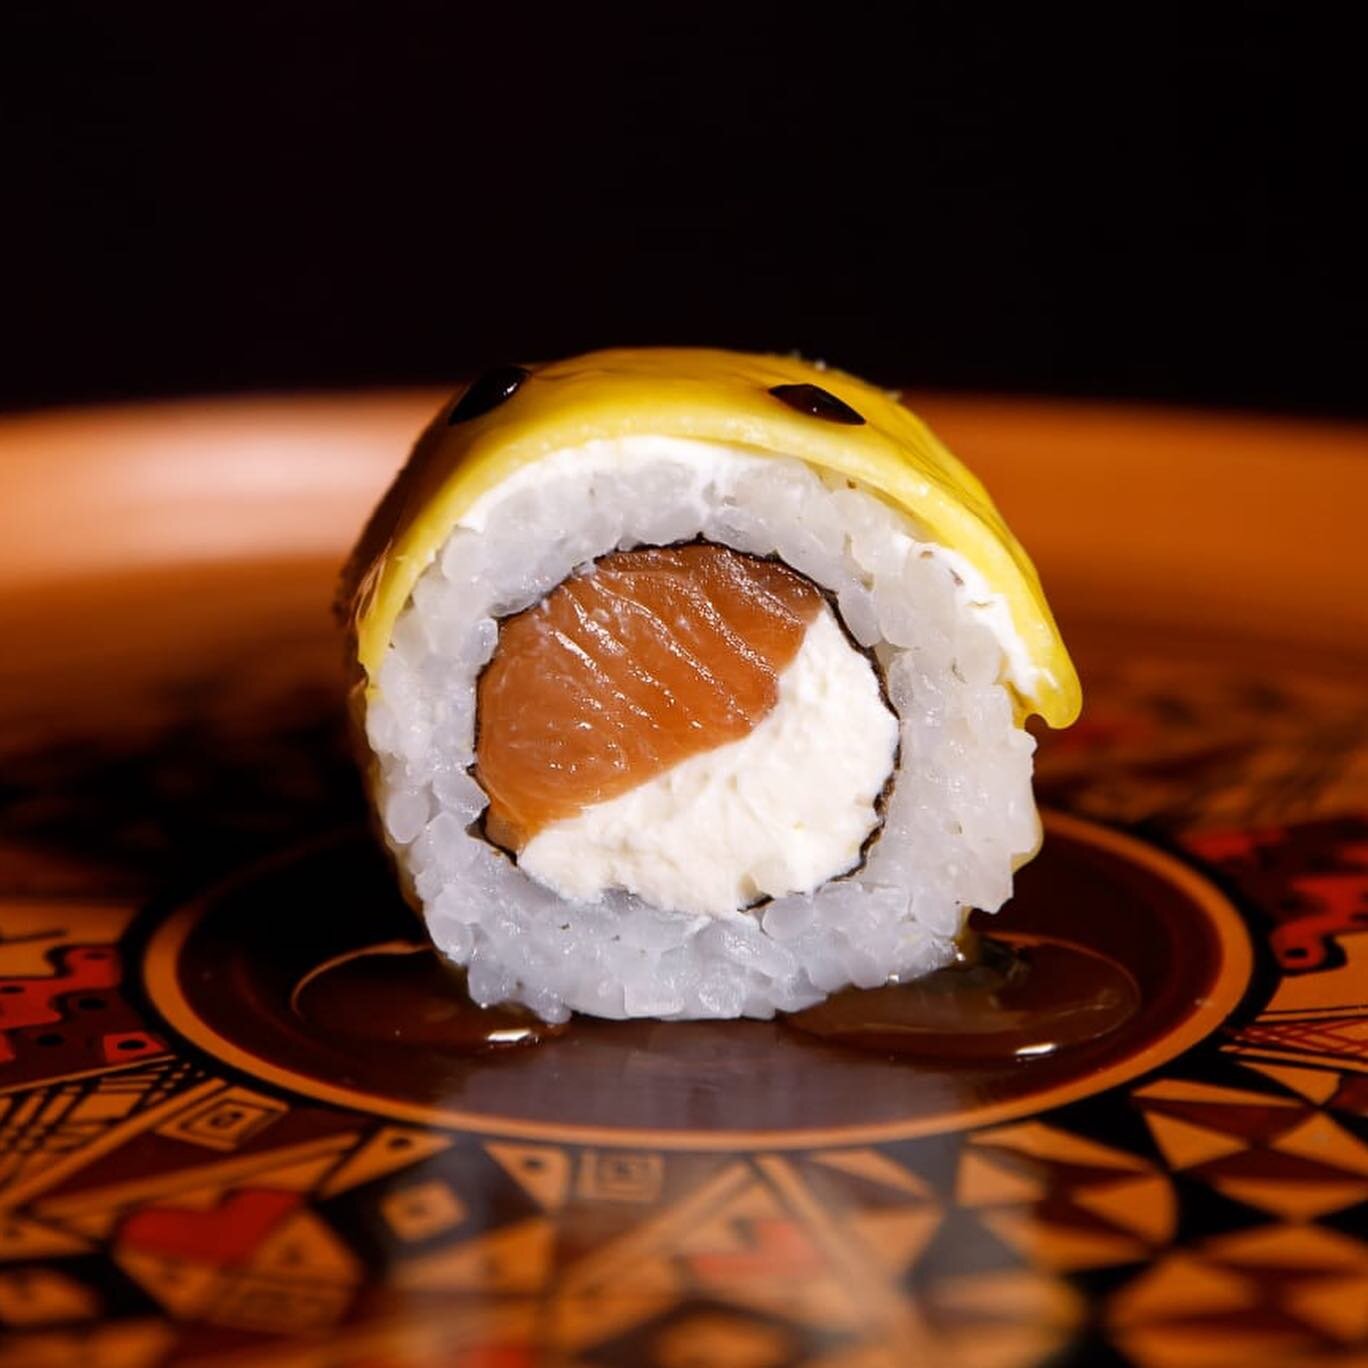 Contamos con piezas de sushi cause&ntilde;o, nikkei y cl&aacute;sico, para que puedas experimentar un viaje de sabor hecho a medida 🥢🔥.

Probalos solos o como parte de nuestros combinados y comenz&aacute; a despedir el a&ntilde;o con el sabor que m